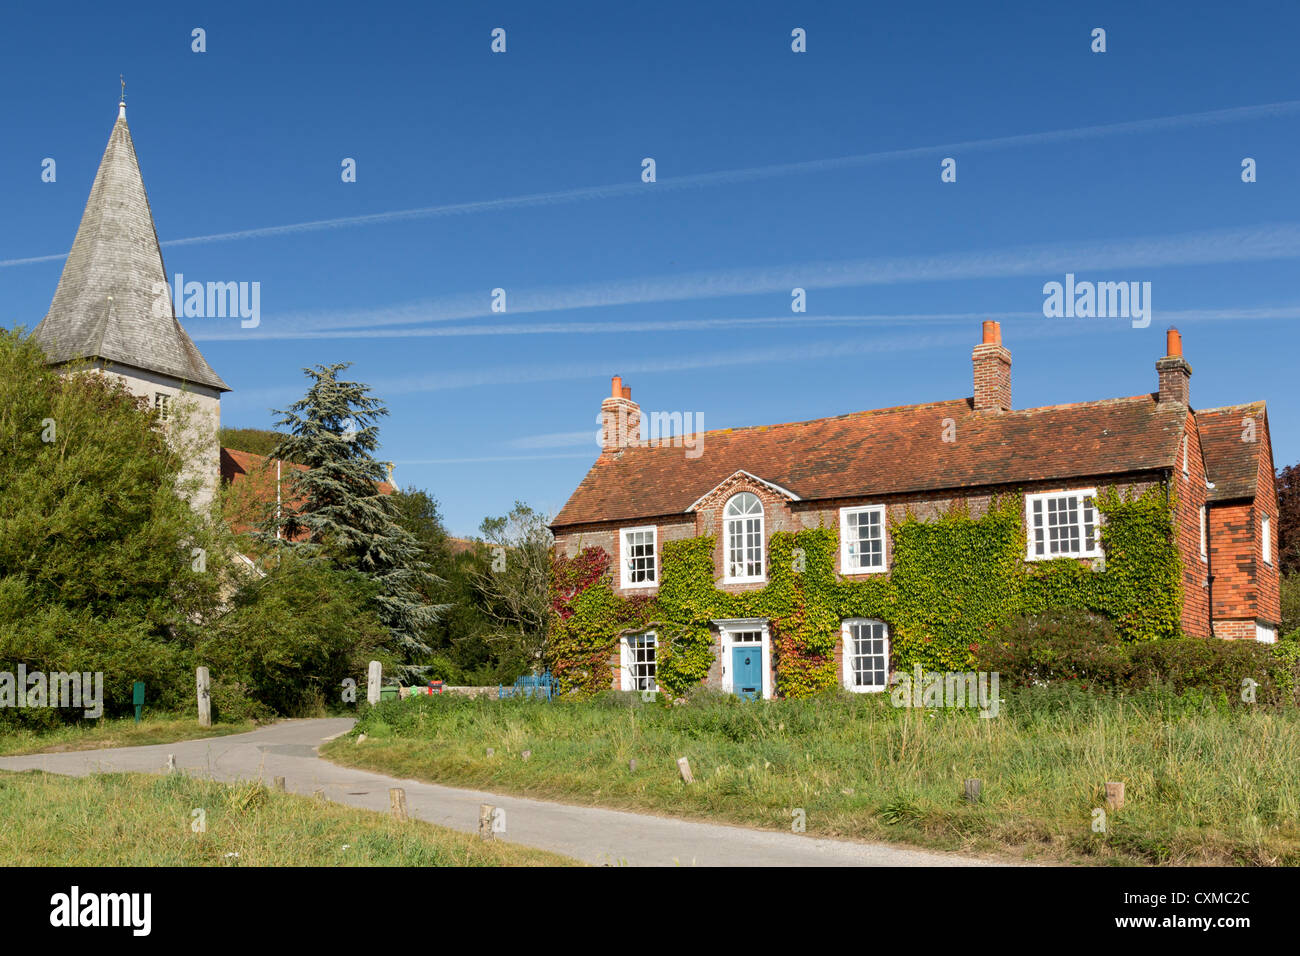 Le village pittoresque de Bosham West Sussex, England UK Banque D'Images